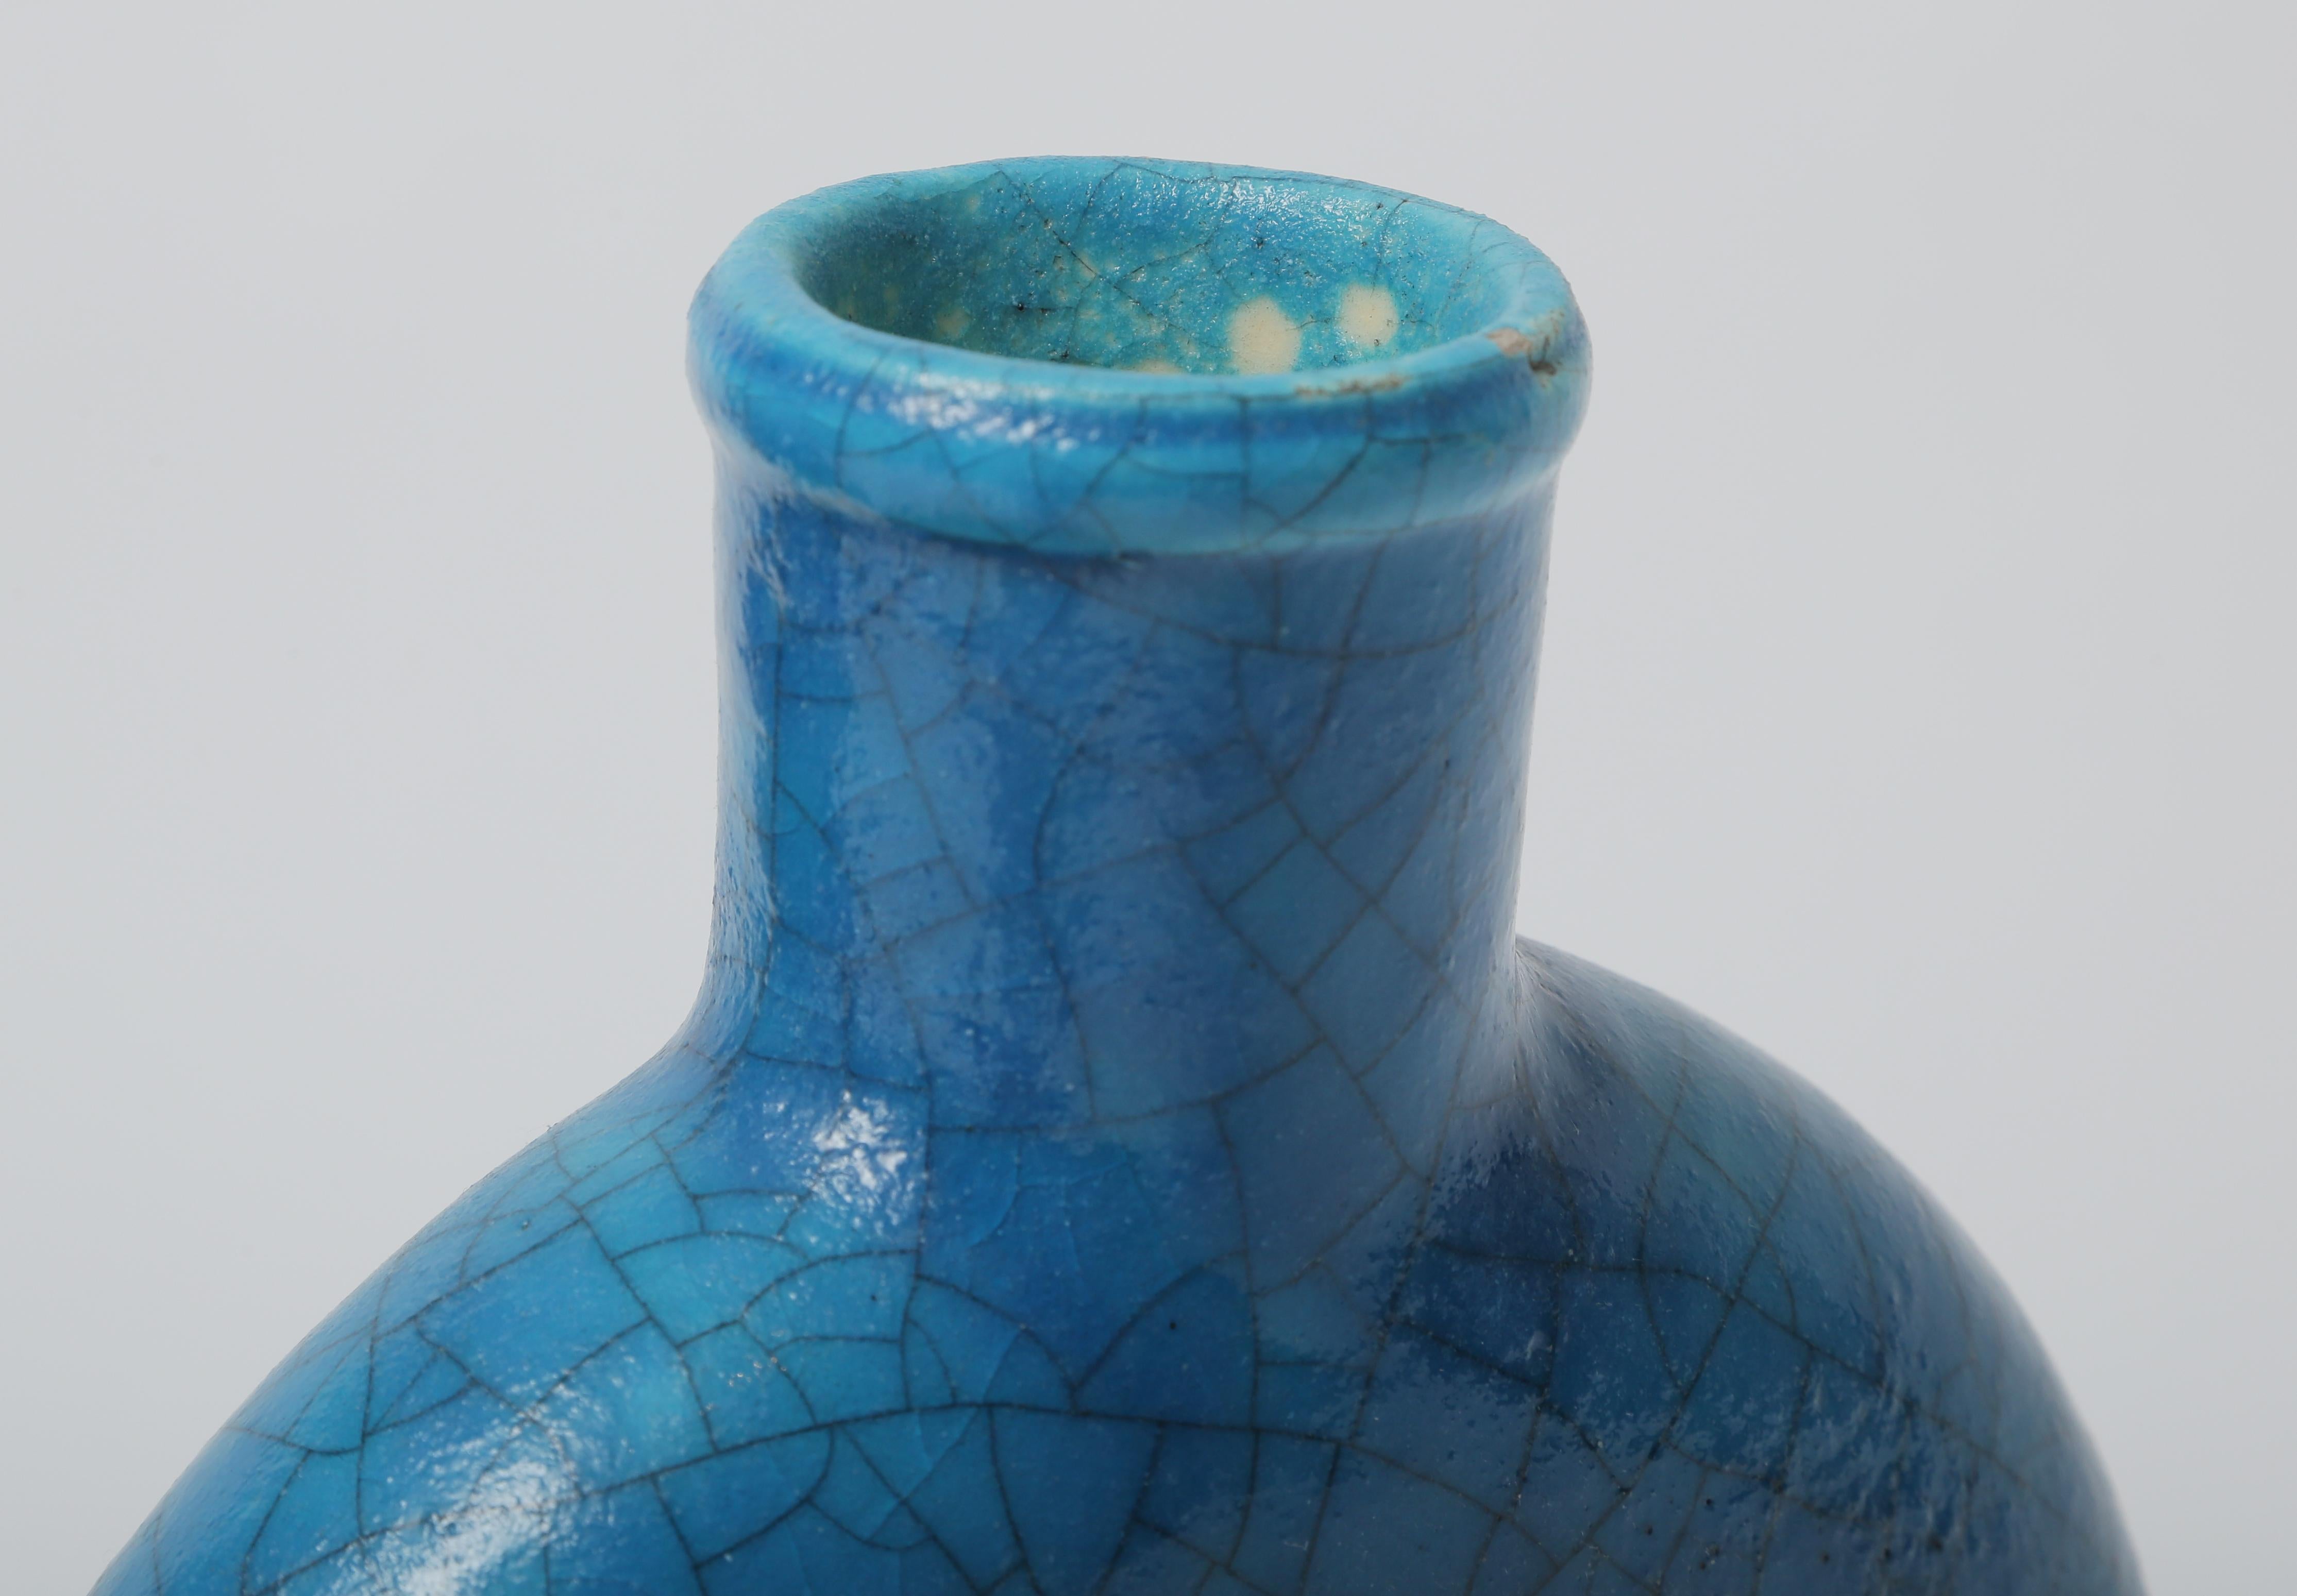 Ceramic Pair of Turquoise Vases, Edmond Lachenal Signed. Art Deco Period, Rare